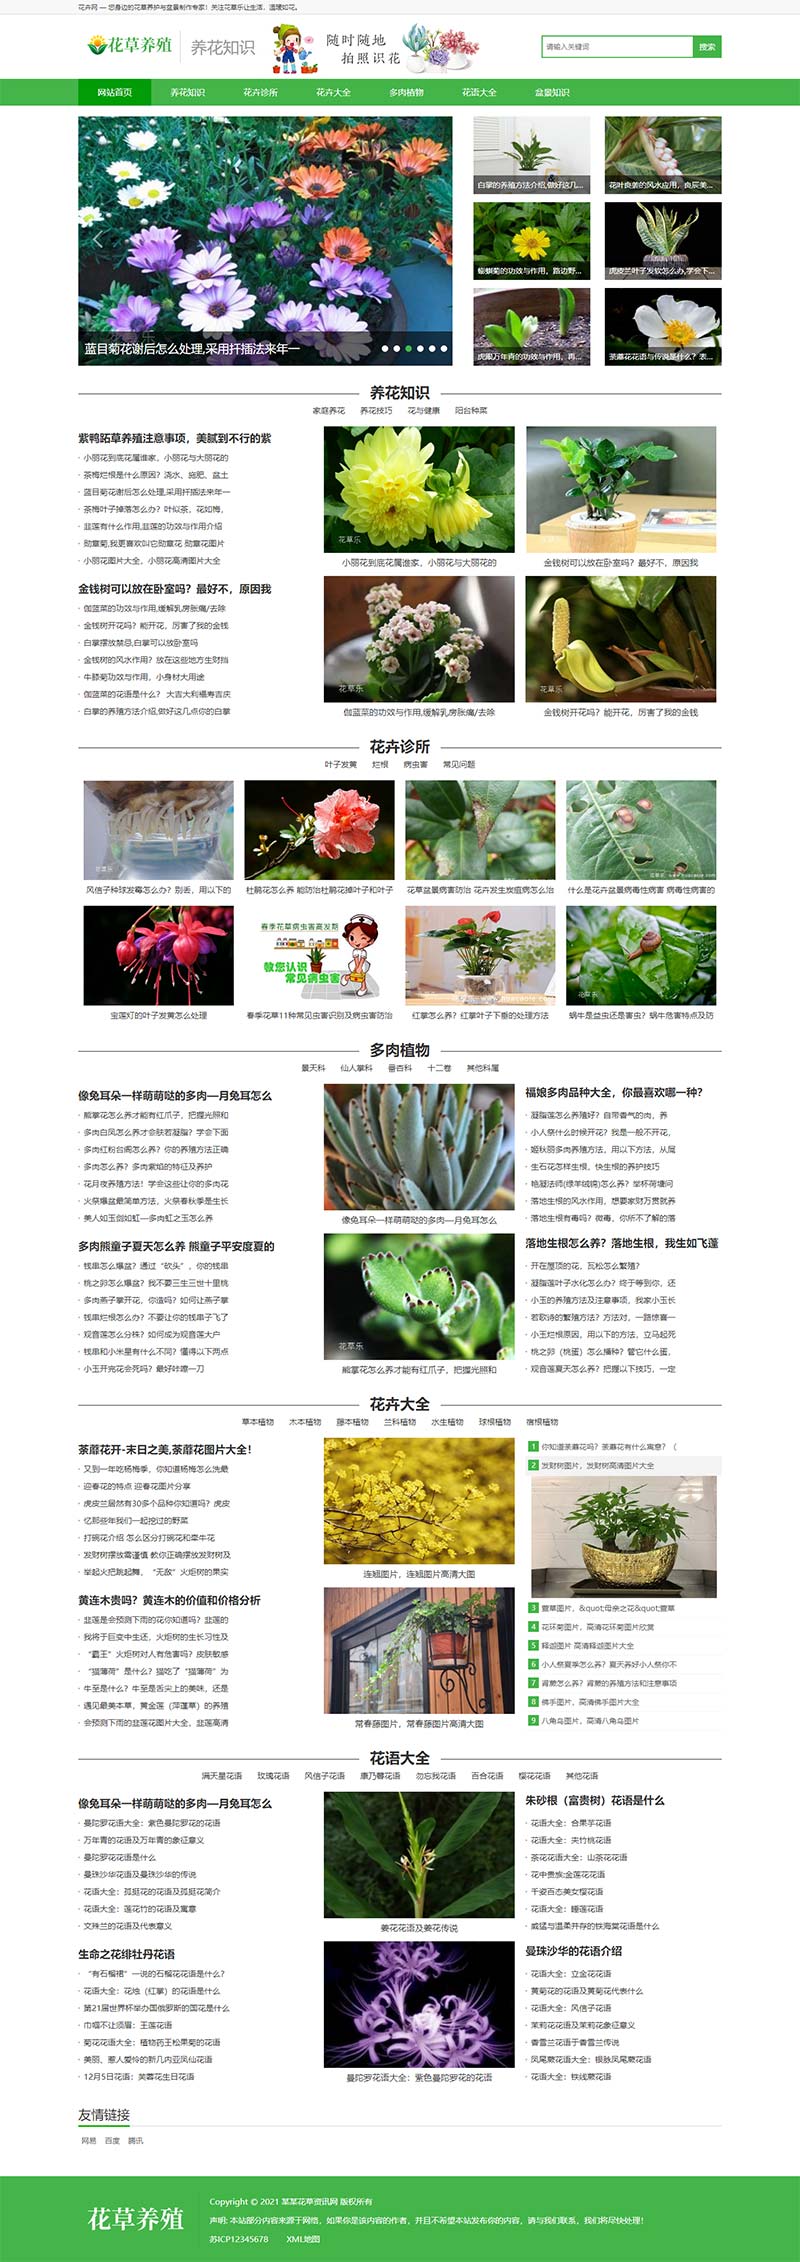 (PC+手机版)花卉植物盆景种植资讯文章网站源码电脑端展示图片